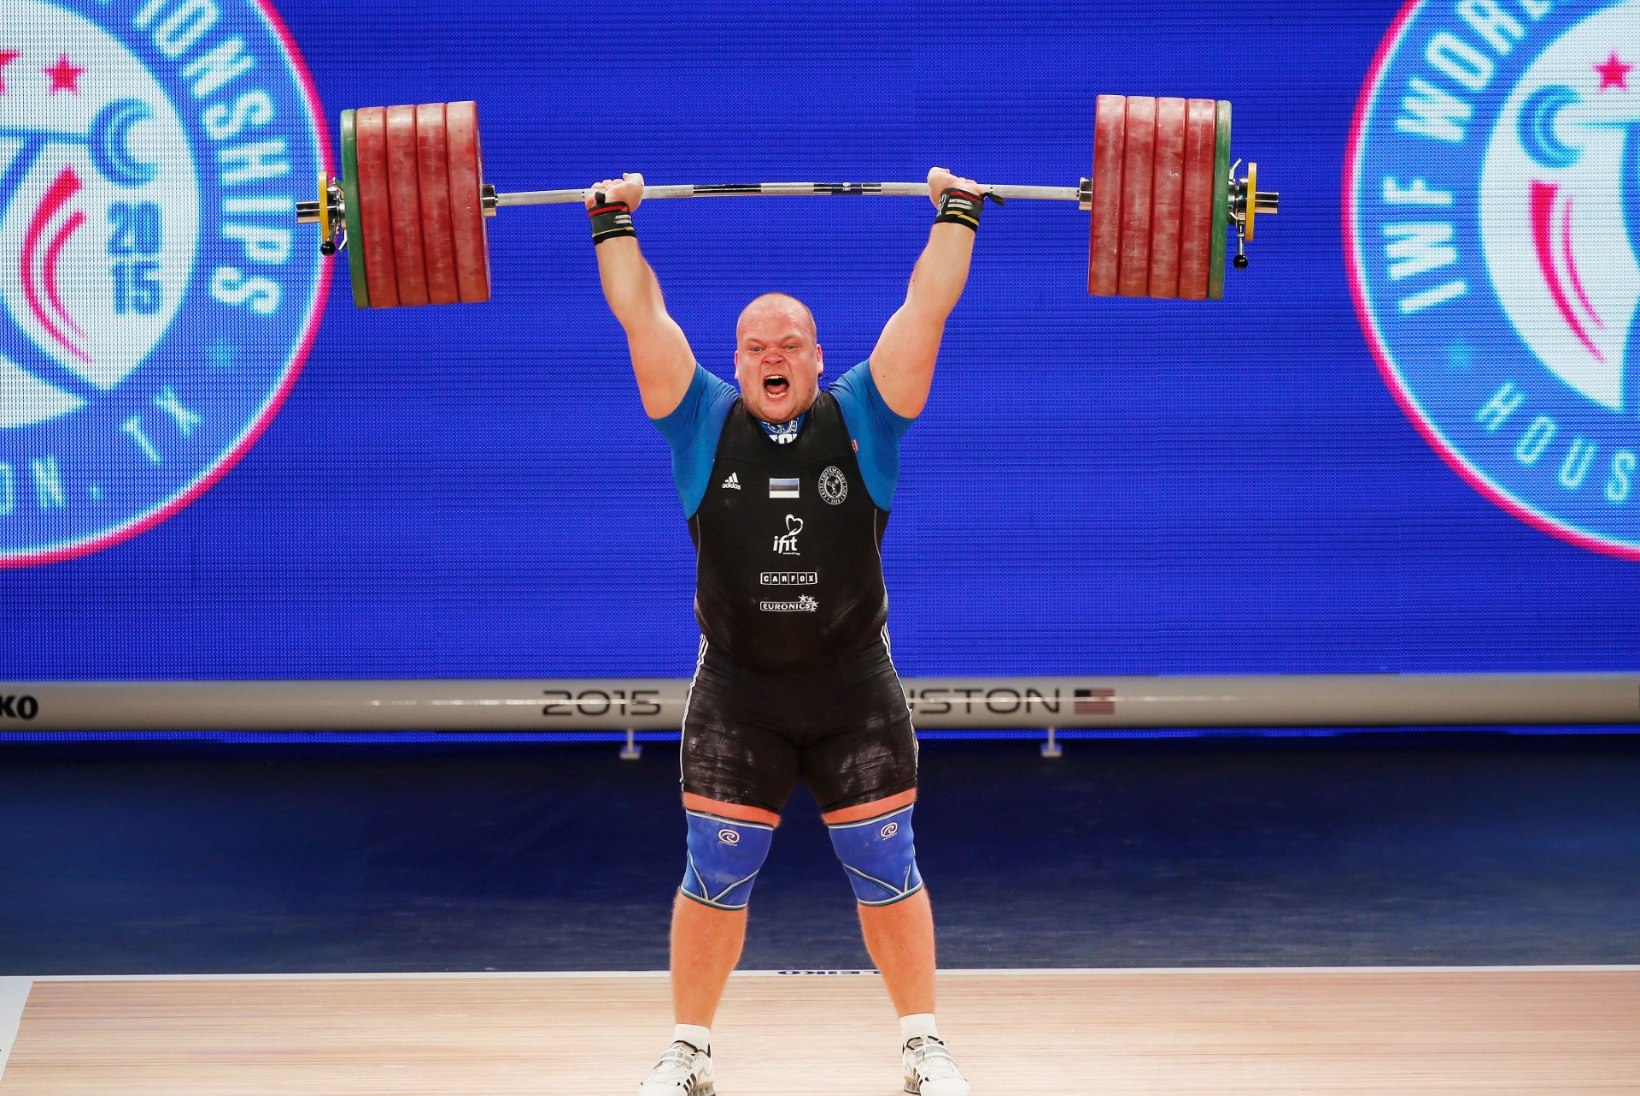 VÕIMAS VIDEO | Tõste, mis riputas Mart Seimi kaela kaks MM-medalit ning külvas eestlastesse rõõmu